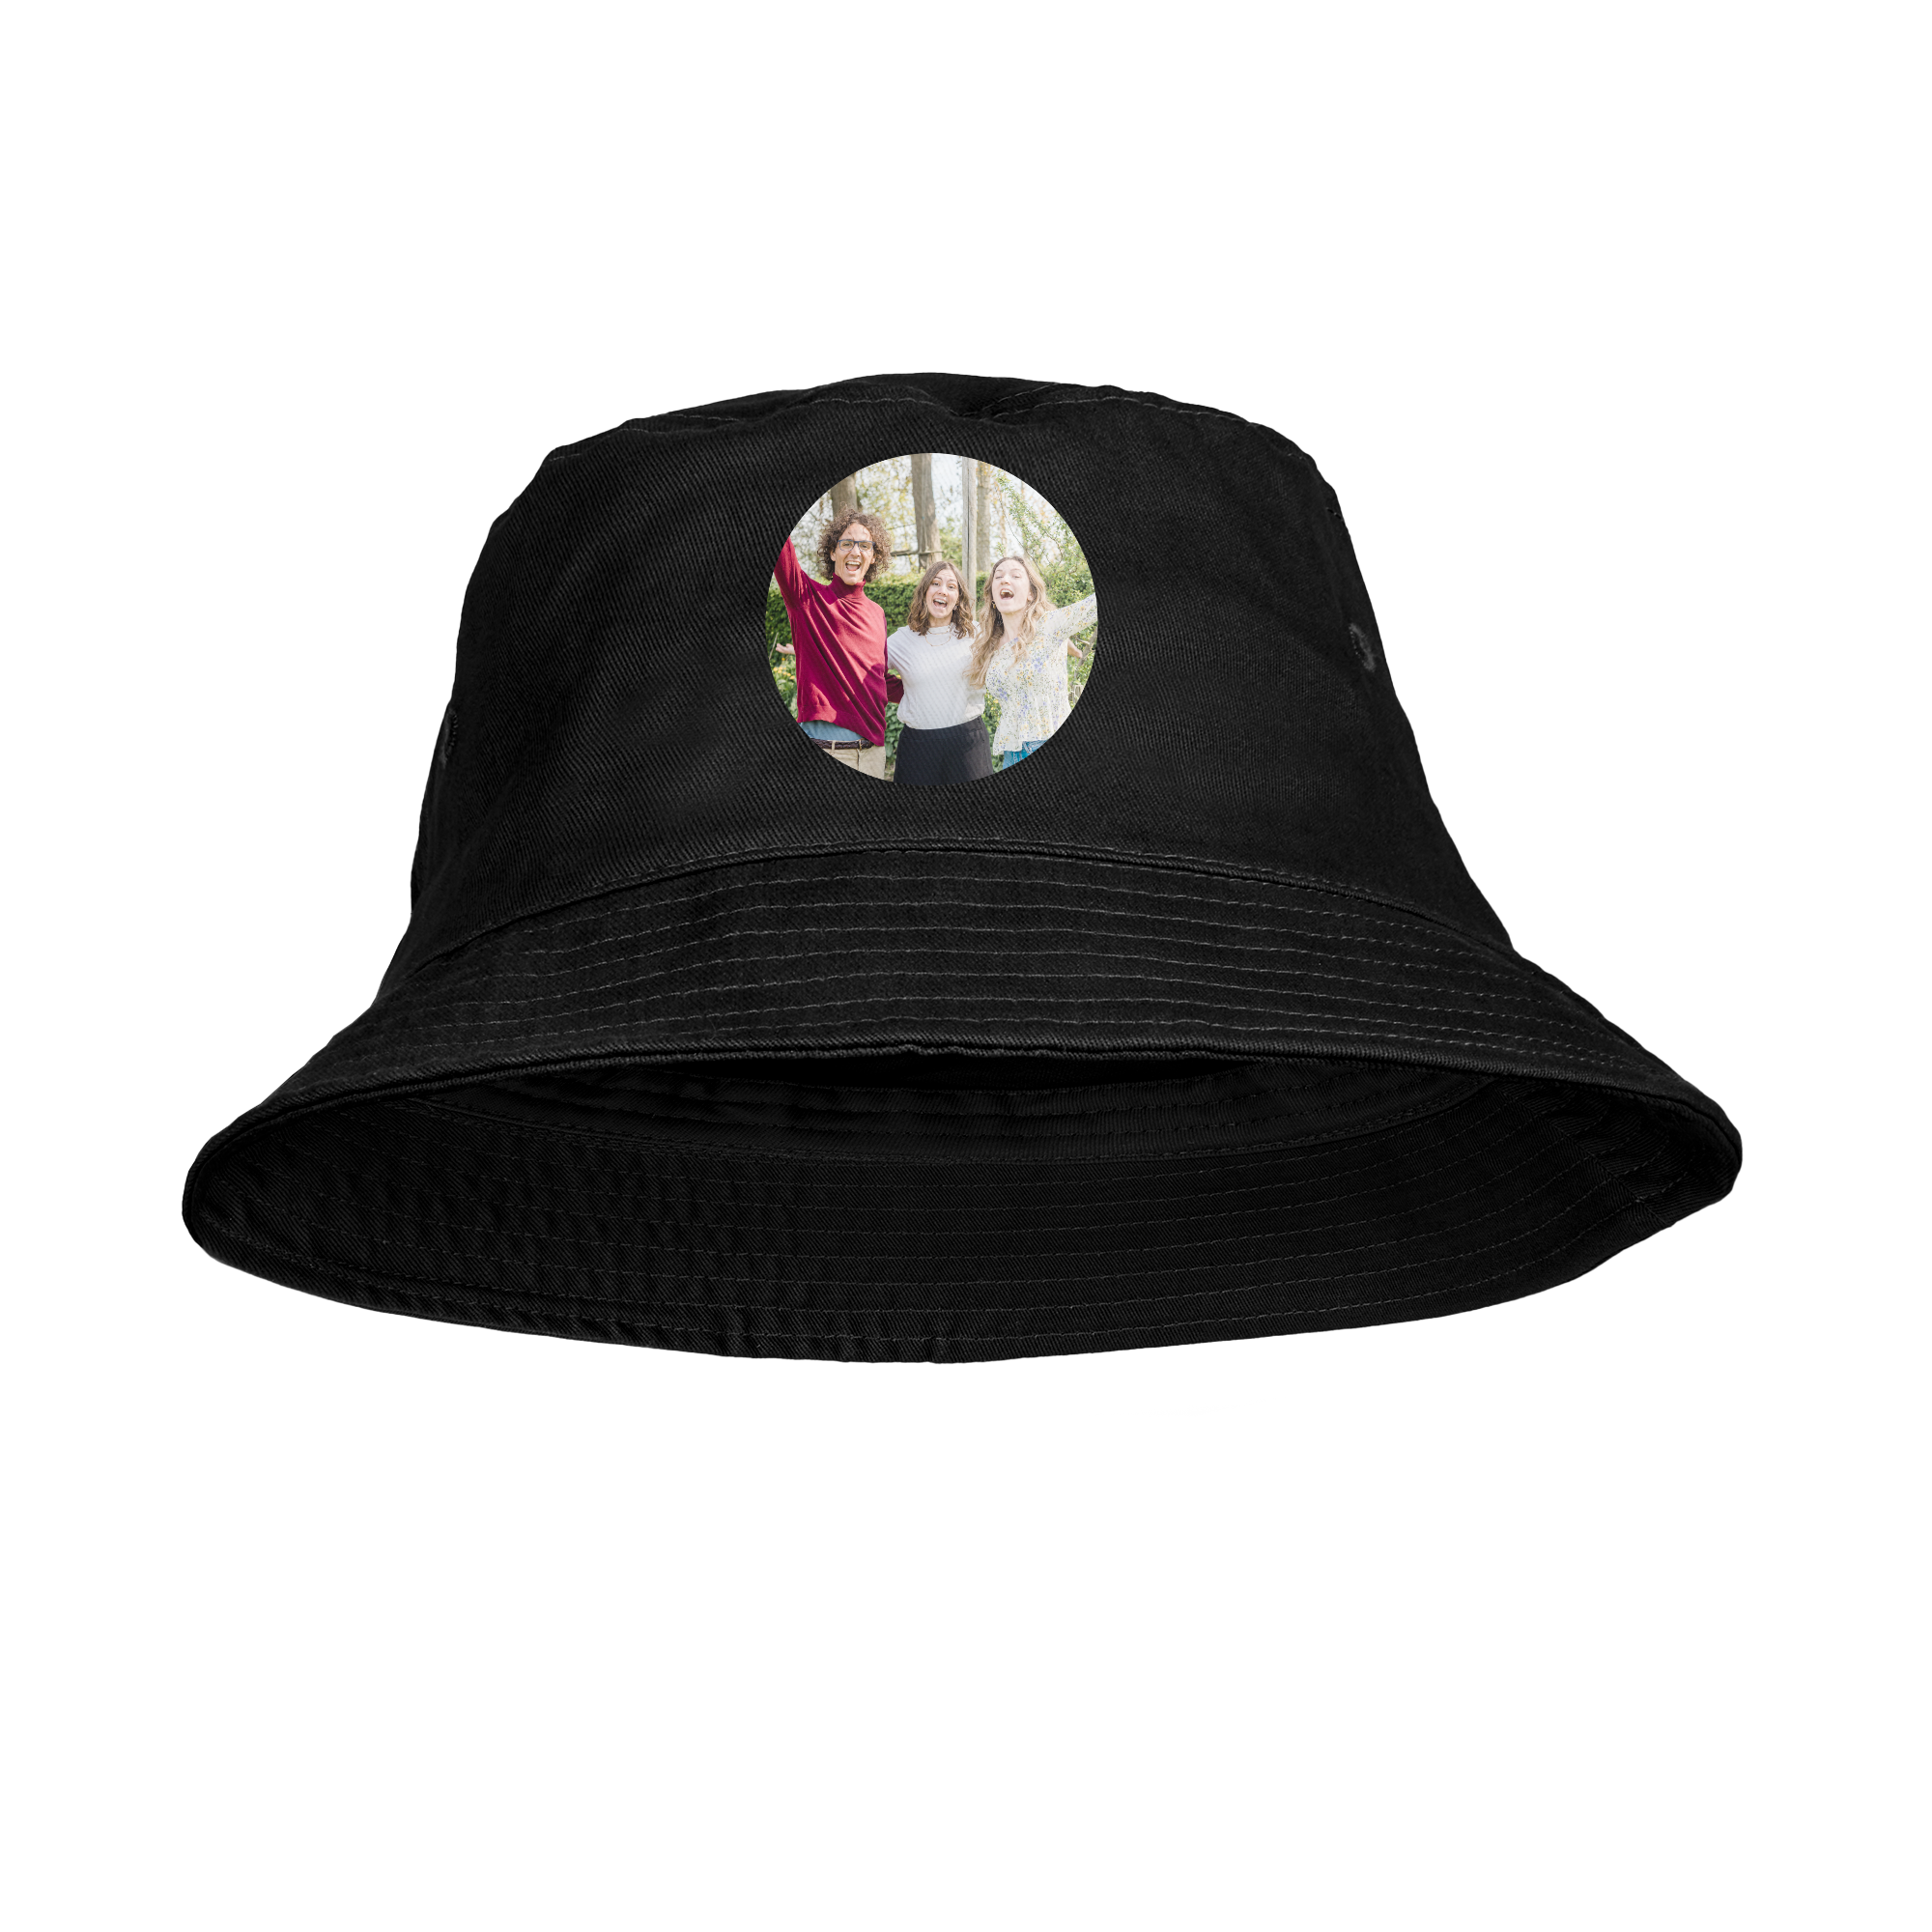 Personalised bucket hat - Black